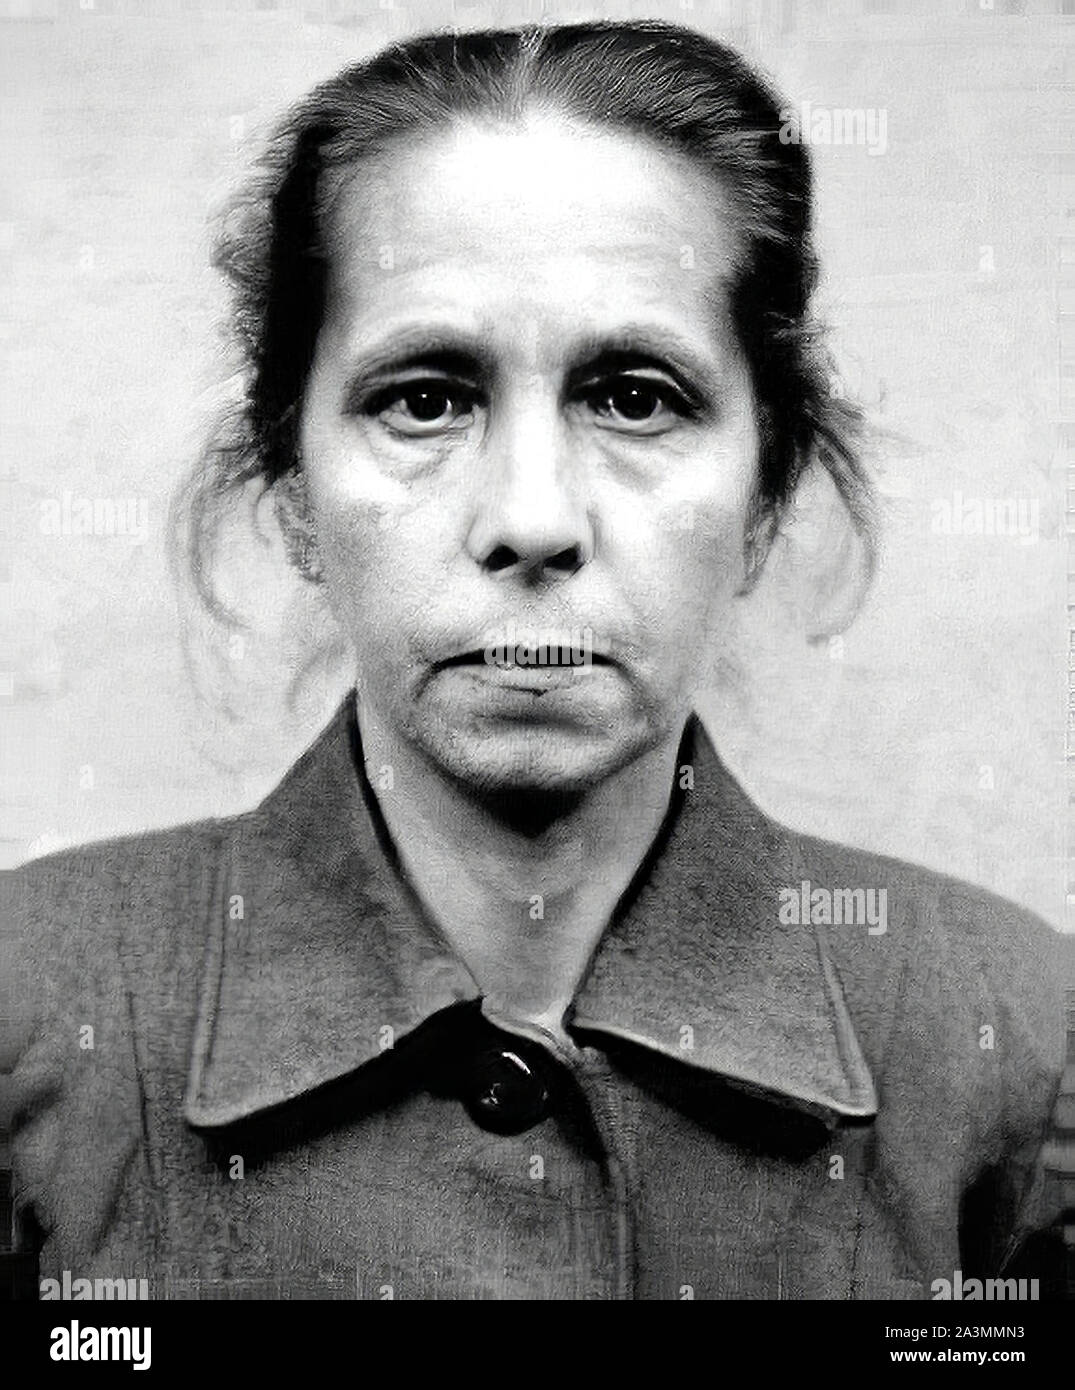 Juana Bormann (ou Johanna Borman ; 10 septembre 1893 - 13 décembre 1945) était un prussien de l'-né d'un gardien de prison dans plusieurs camps de concentration nazis, Banque D'Images